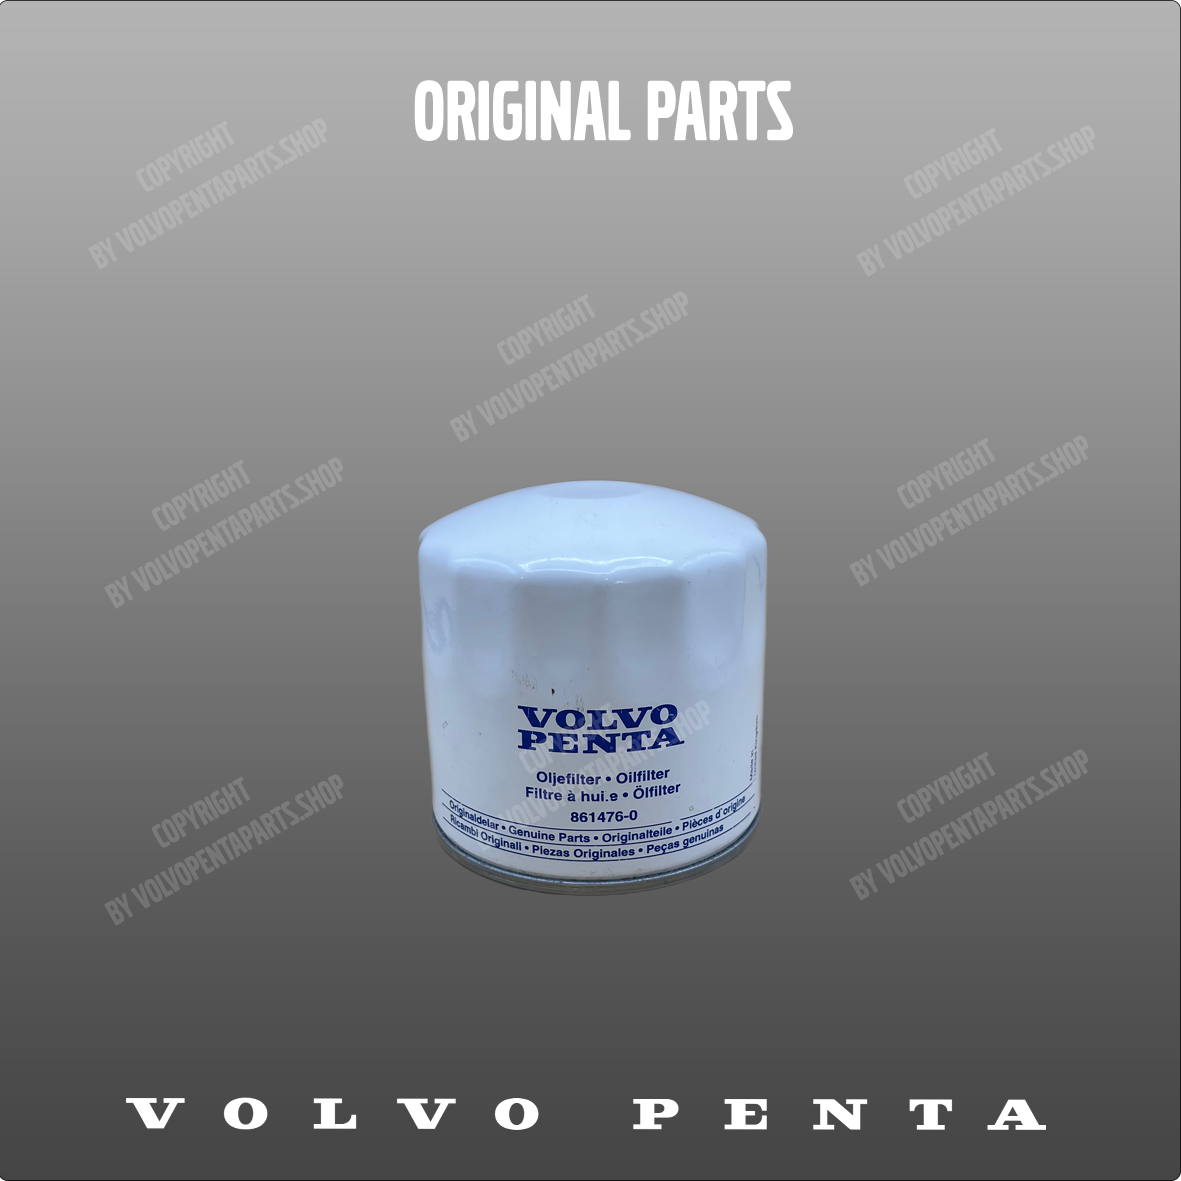 Volvo Penta oil filter 861476